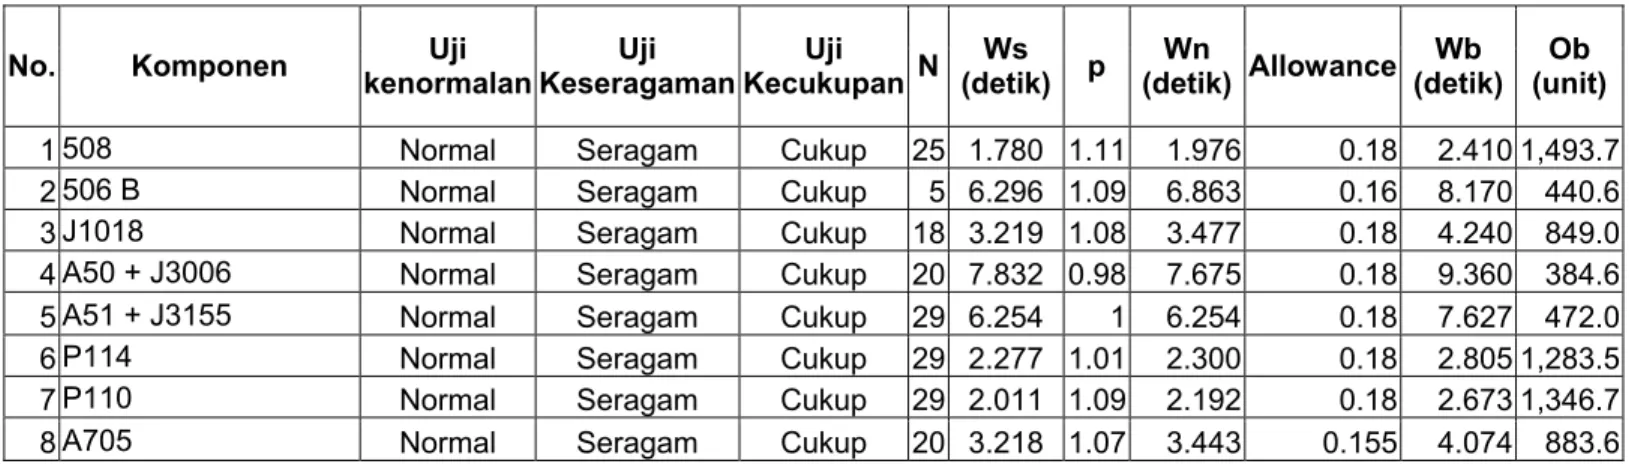 Tabel 4.2.2.4. Daftar Waktu Baku dan Kapasitas Proses Produksi Assy Komponen dan Outer 